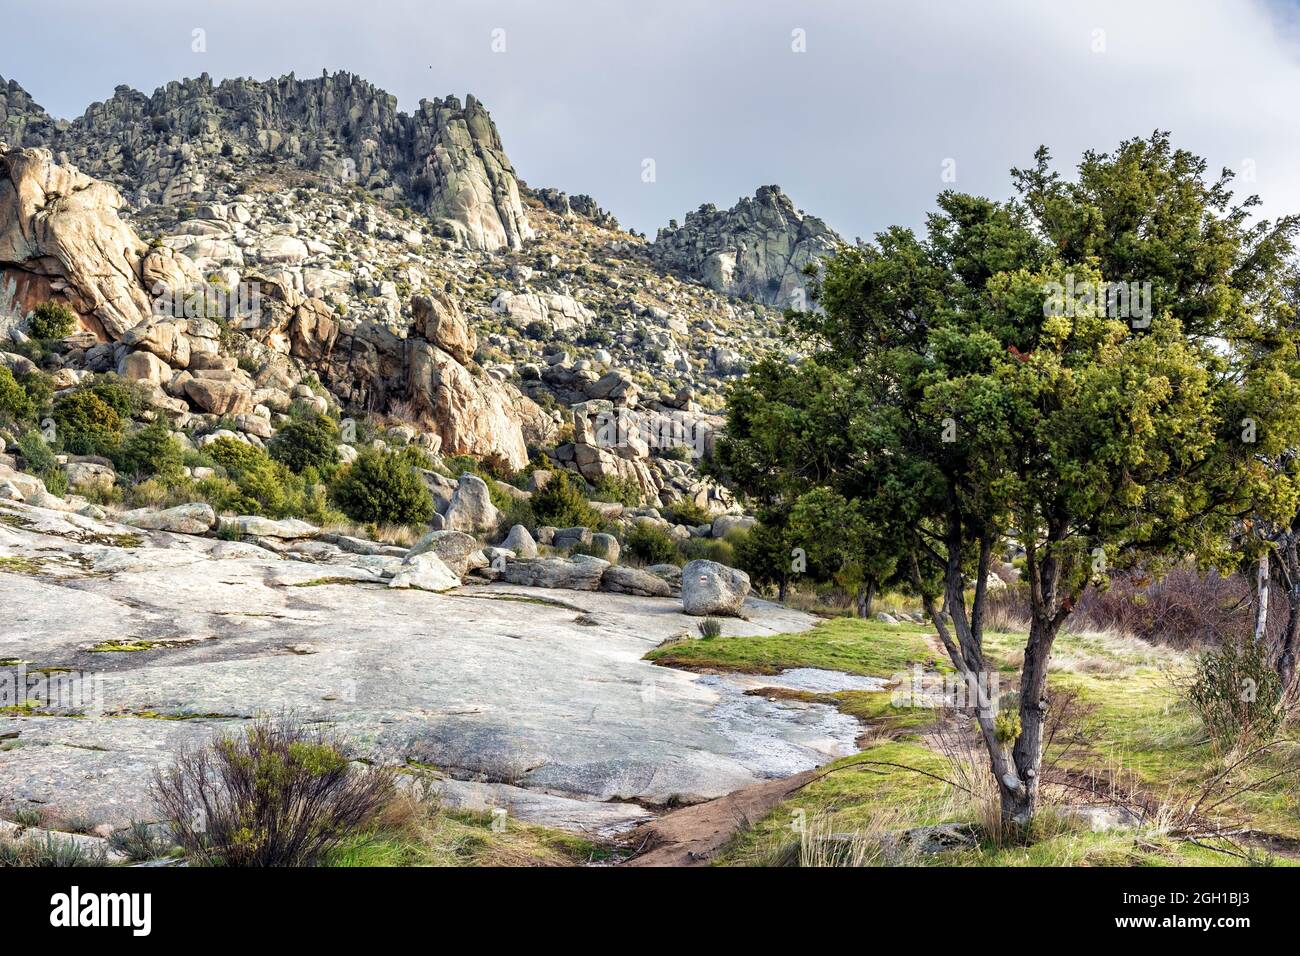 Granite rocks, cistus and pines in Sierra Cabrera. Madrid. Spain. Europe. Stock Photo